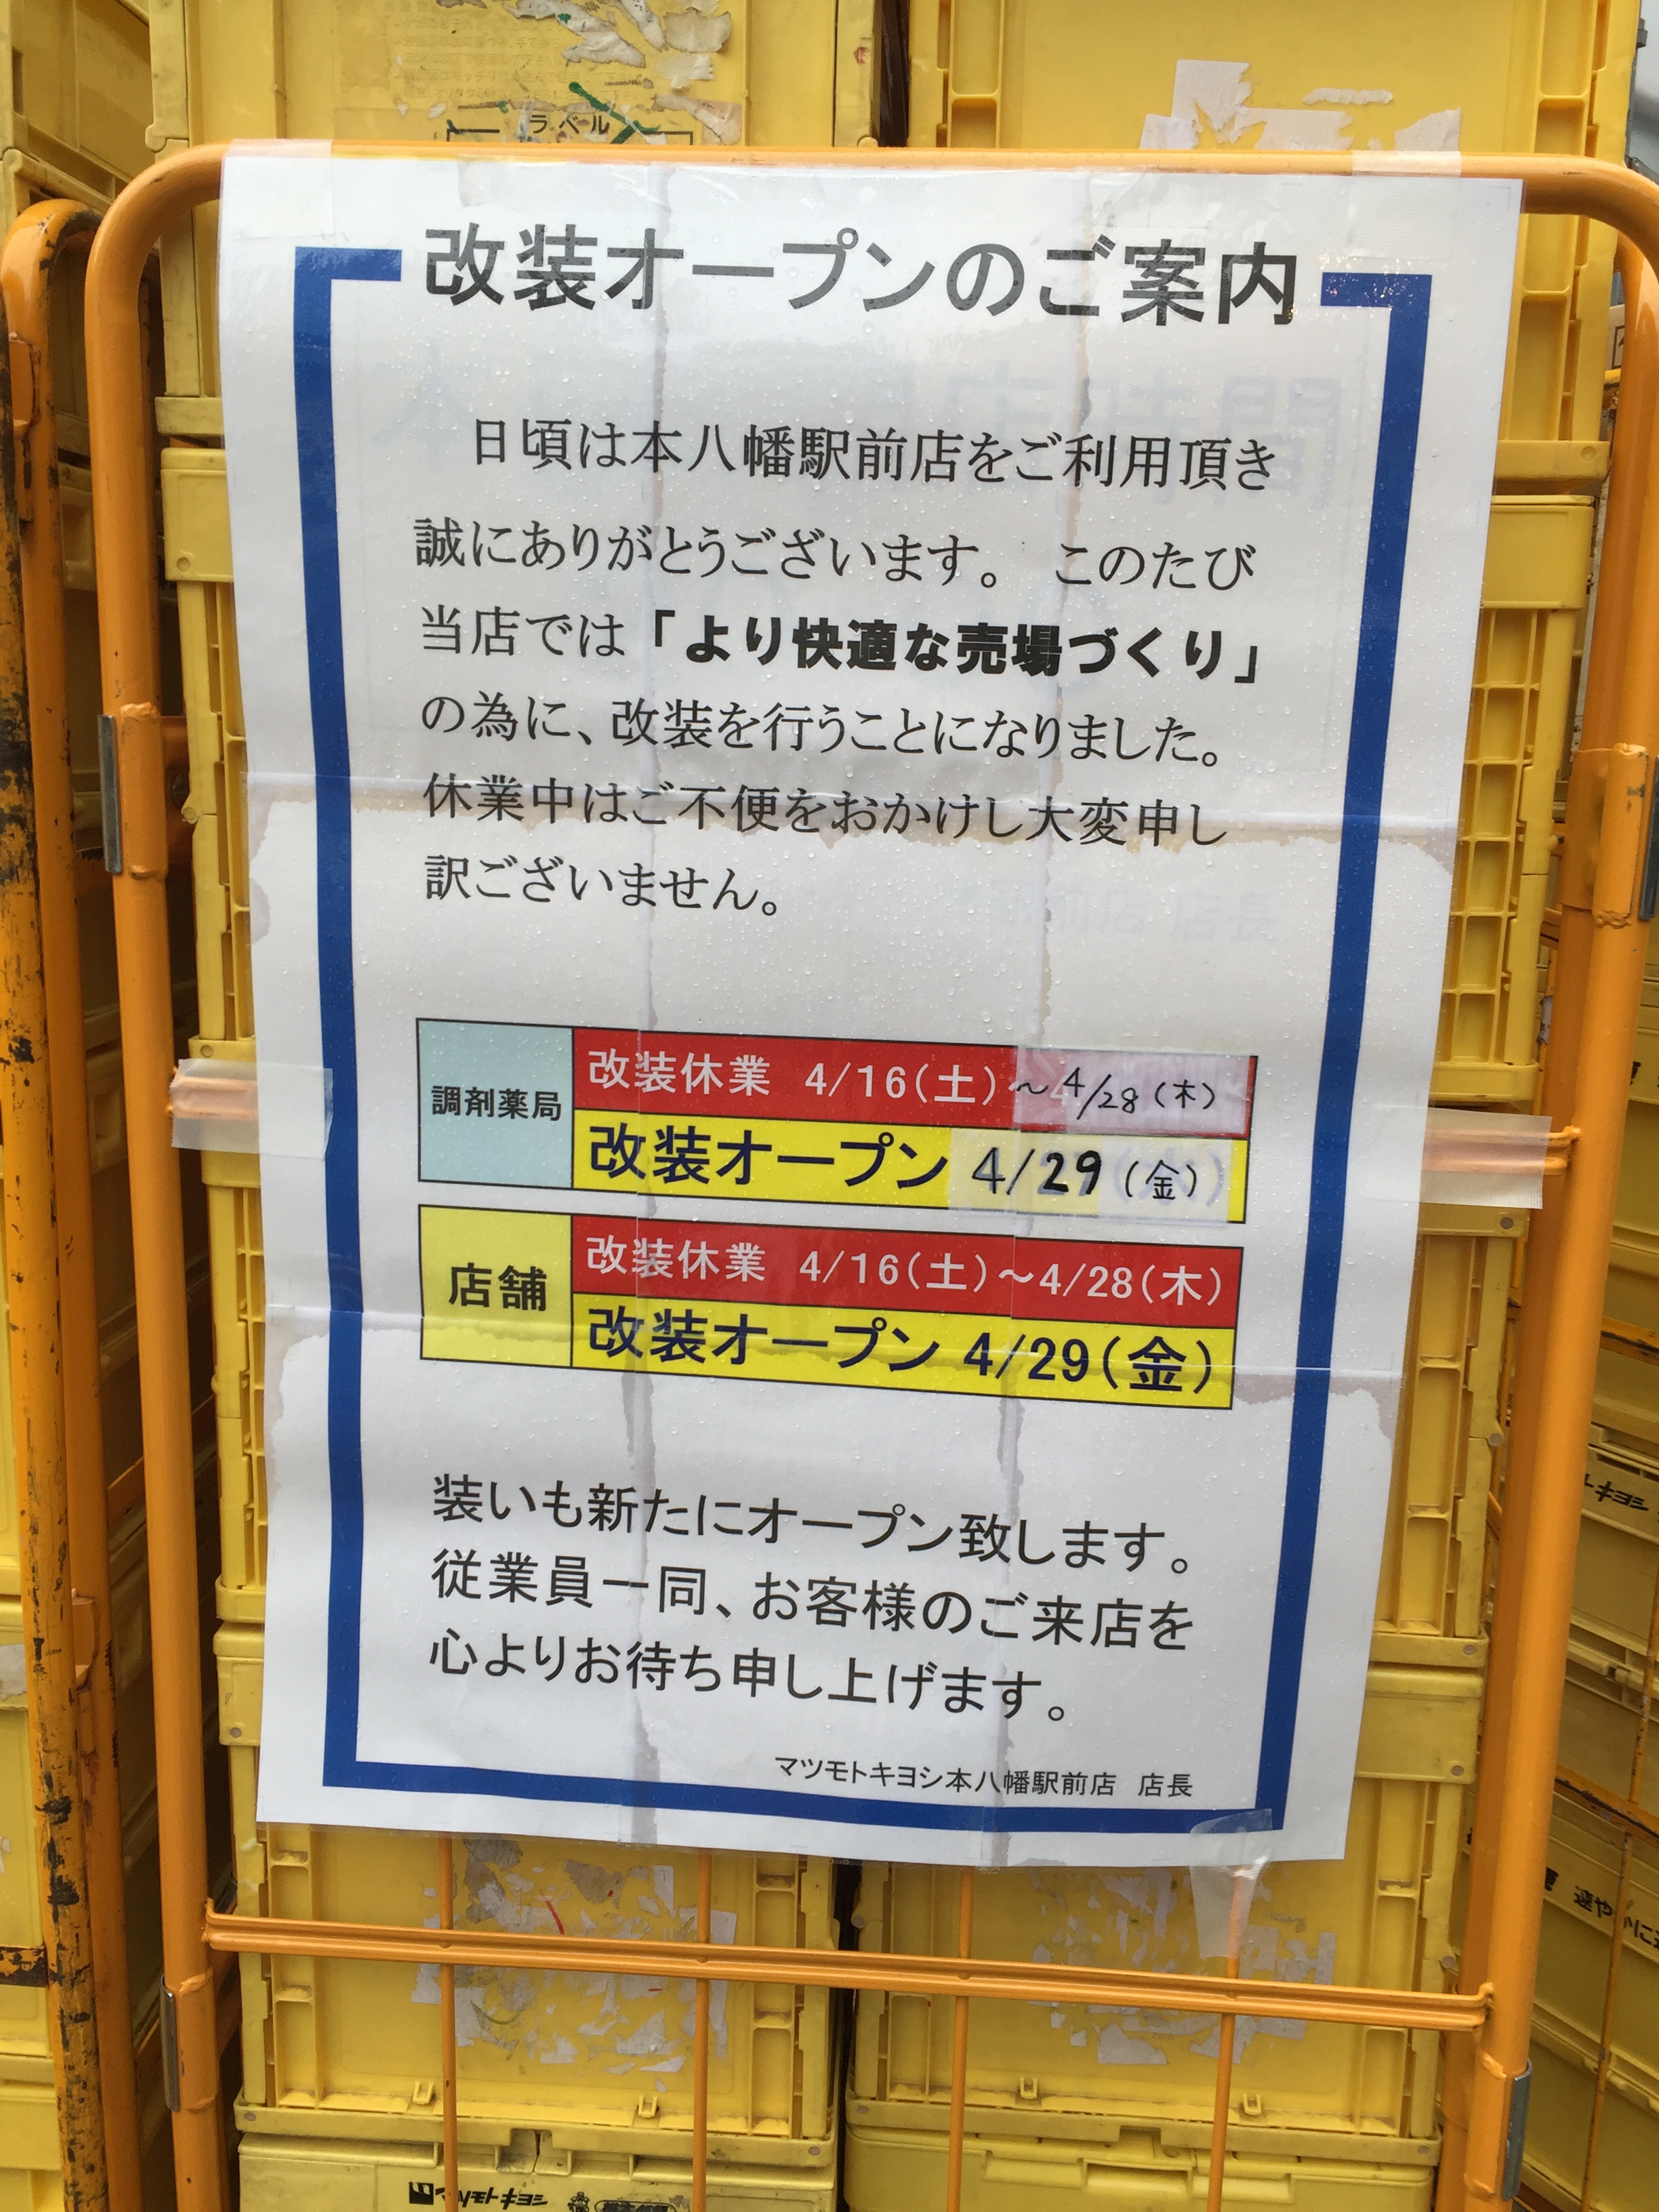 マツキヨ本八幡店が29日がオープンだそうです。